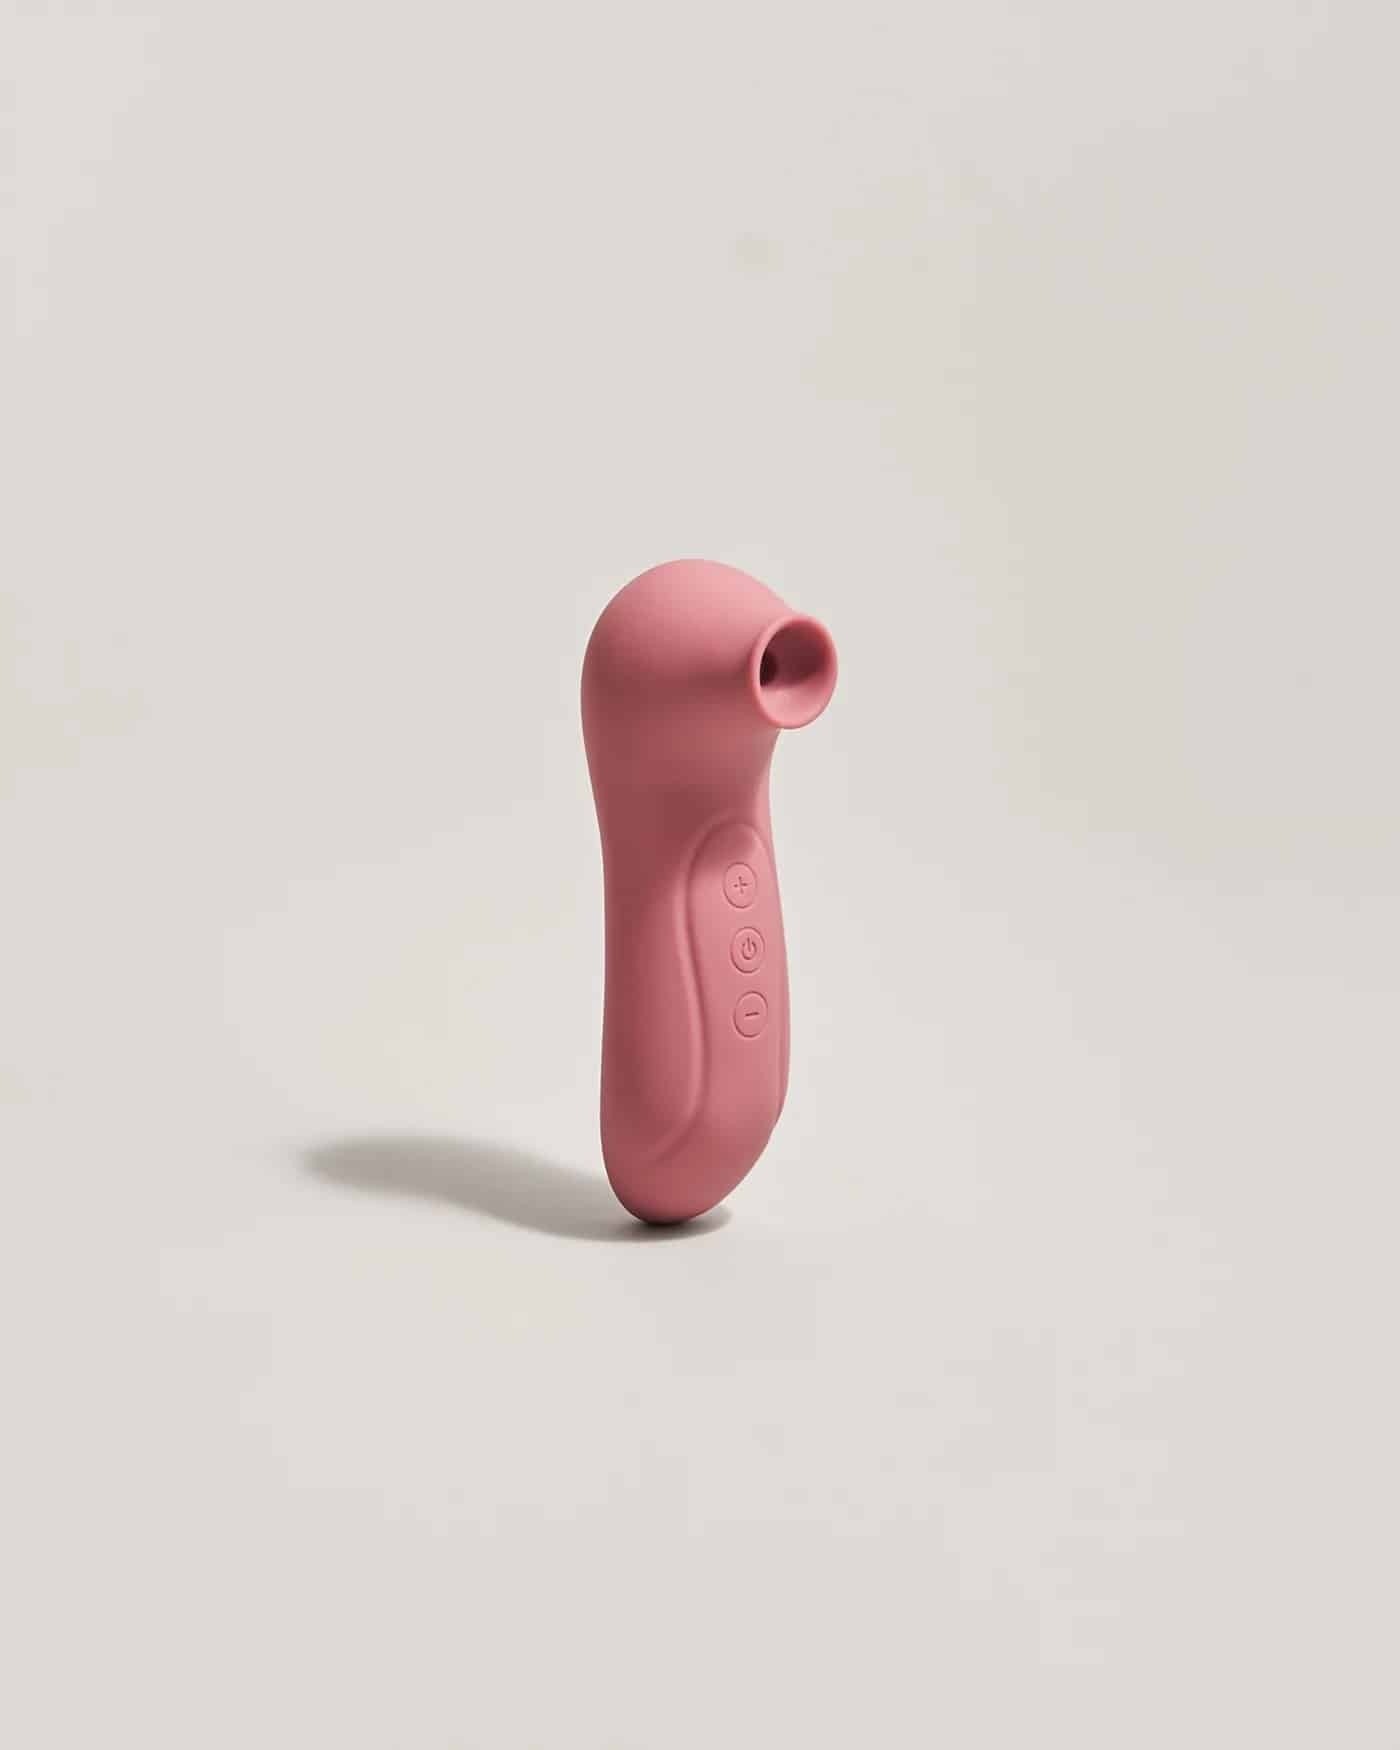 Estimulador-clitoris-succionador-rosa-meibi-bea_1400x